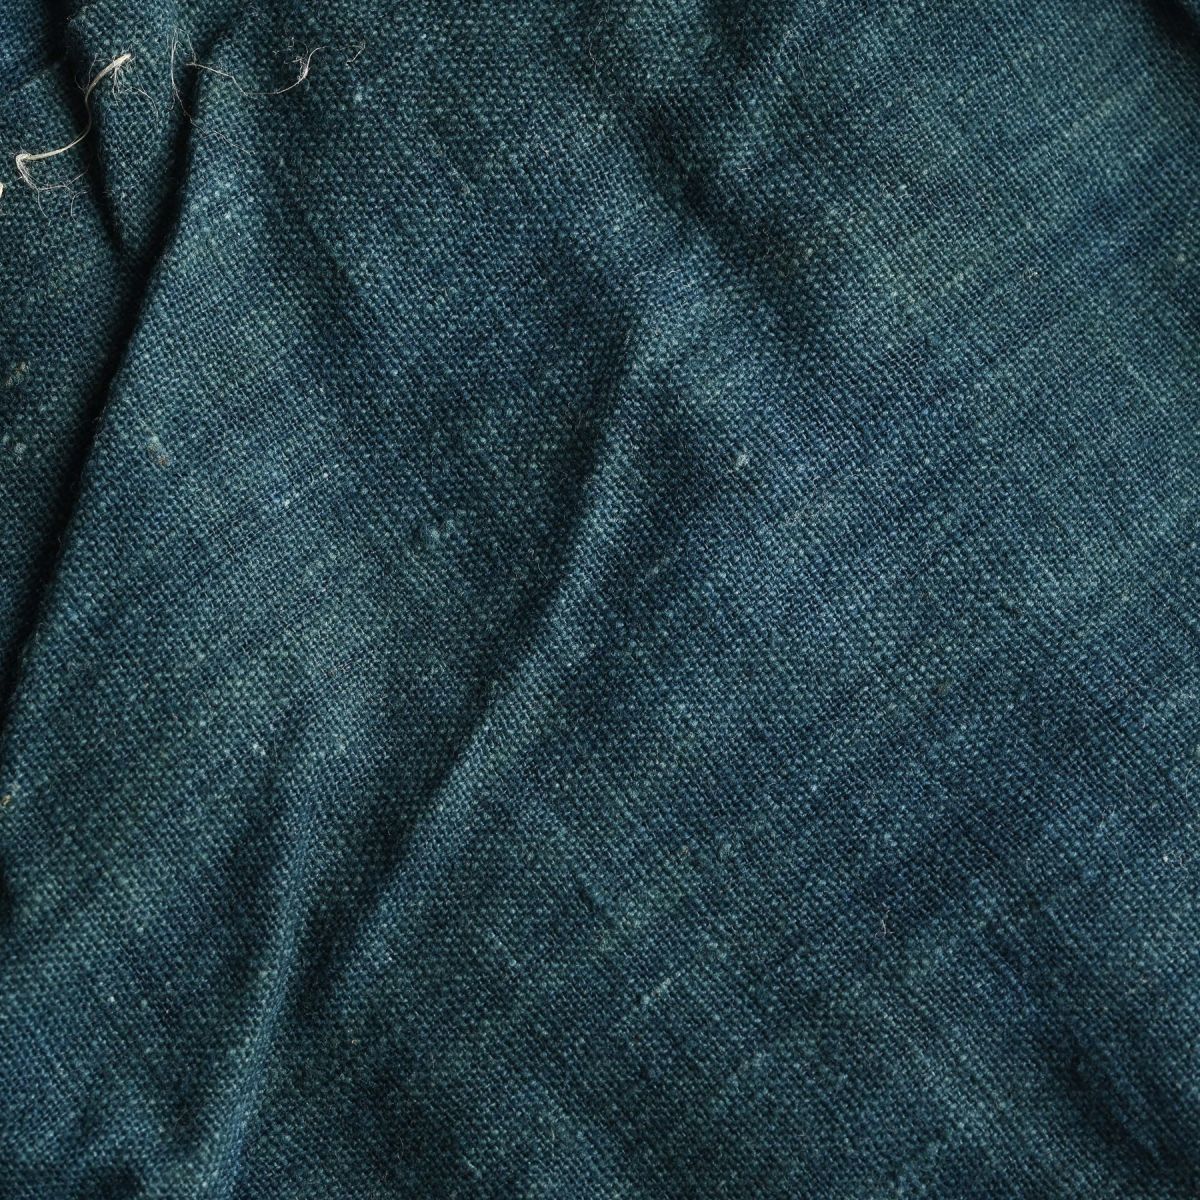 古布 時代 藍染 無地 一枚布 まとめて 浅葱 納戸 緑 継ぎ接ぎ 絣 木綿 